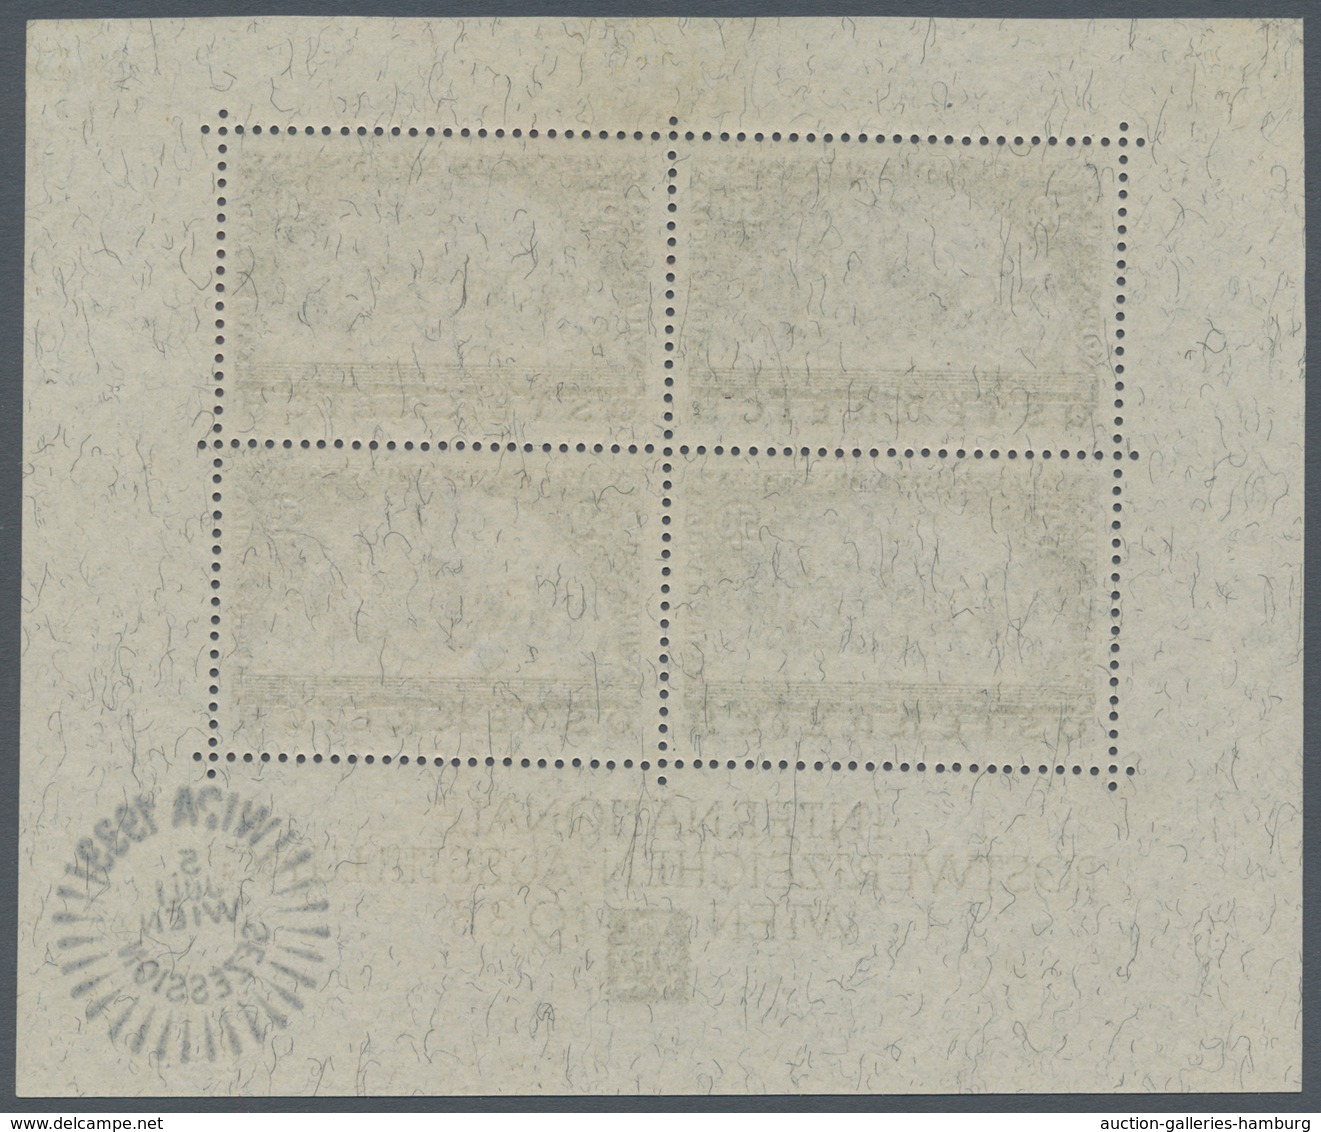 Österreich: 1933, Wipa-Block Formatverkleinert, Ungebraucht Mit Originalgummi Und Haftspur Oben, Rec - Unused Stamps